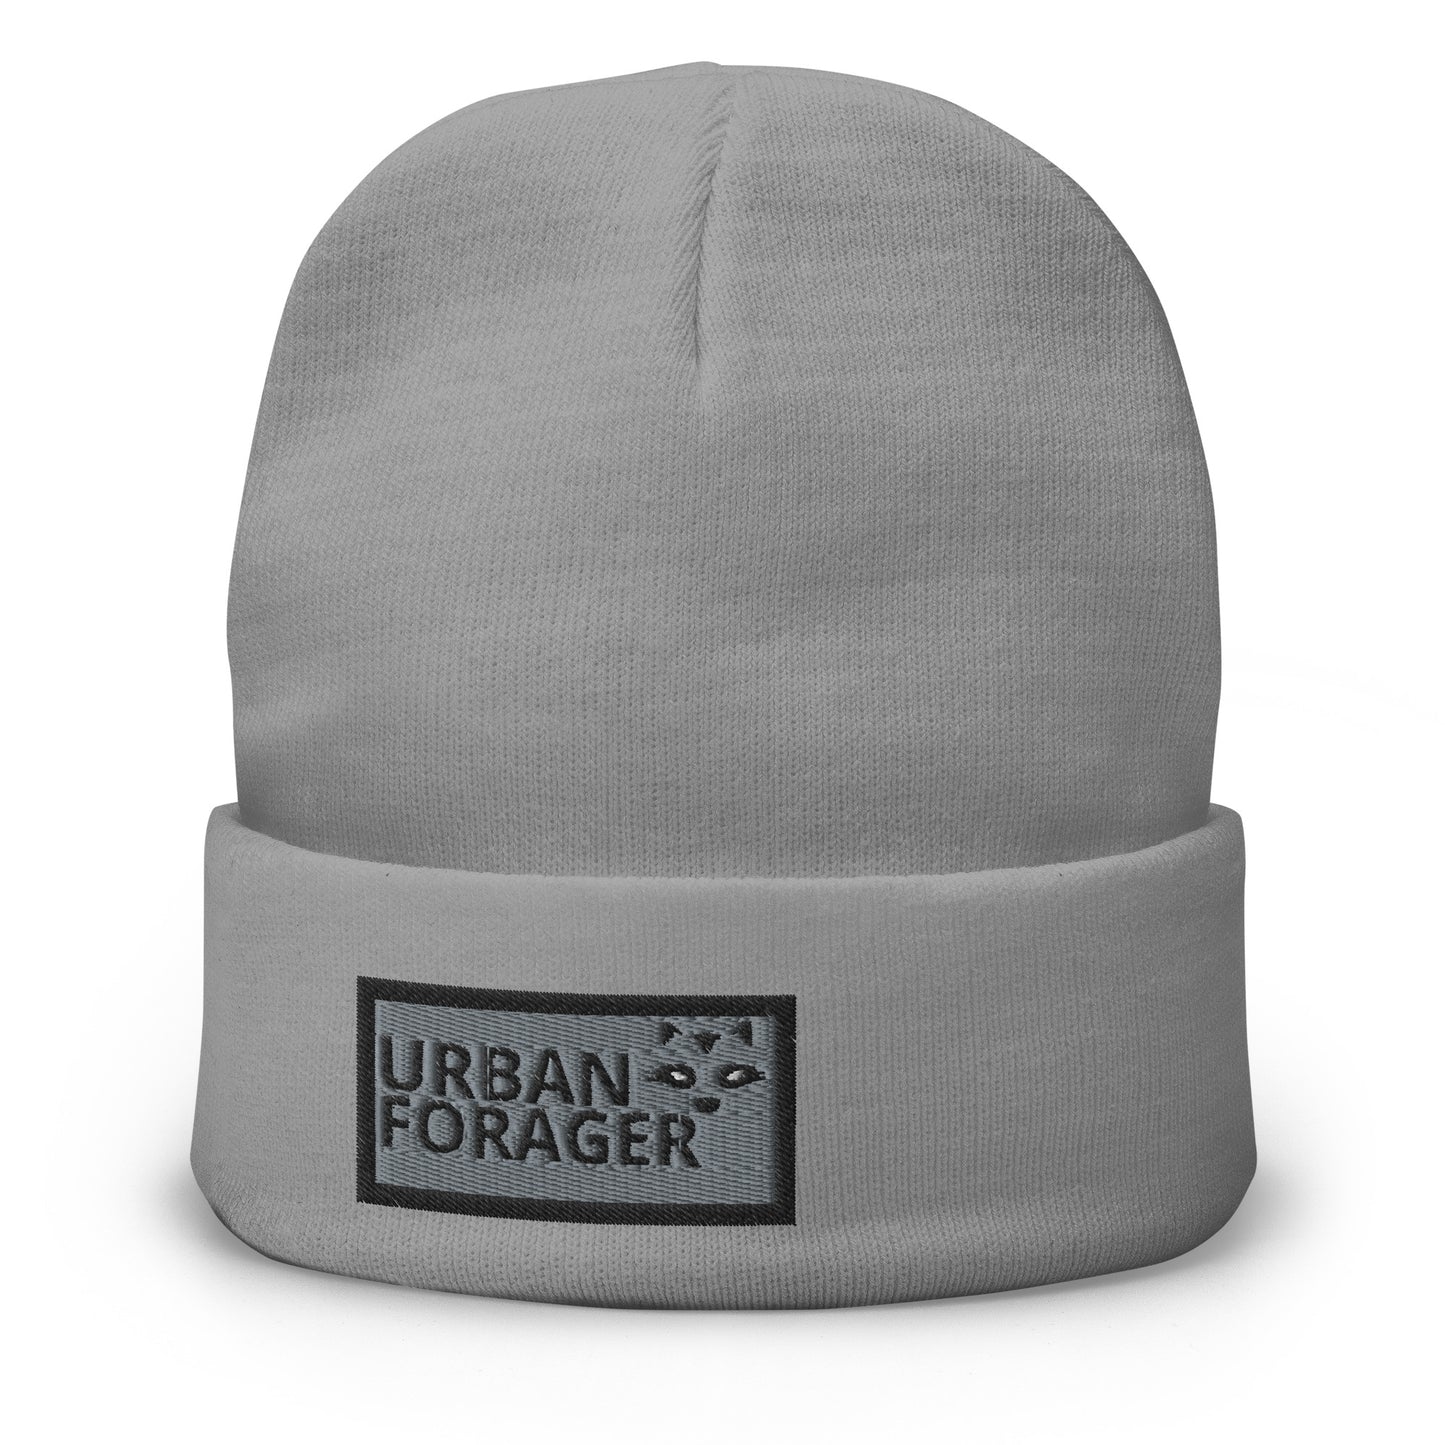 Headwear: "Urban Forager" Embroidered Beanie